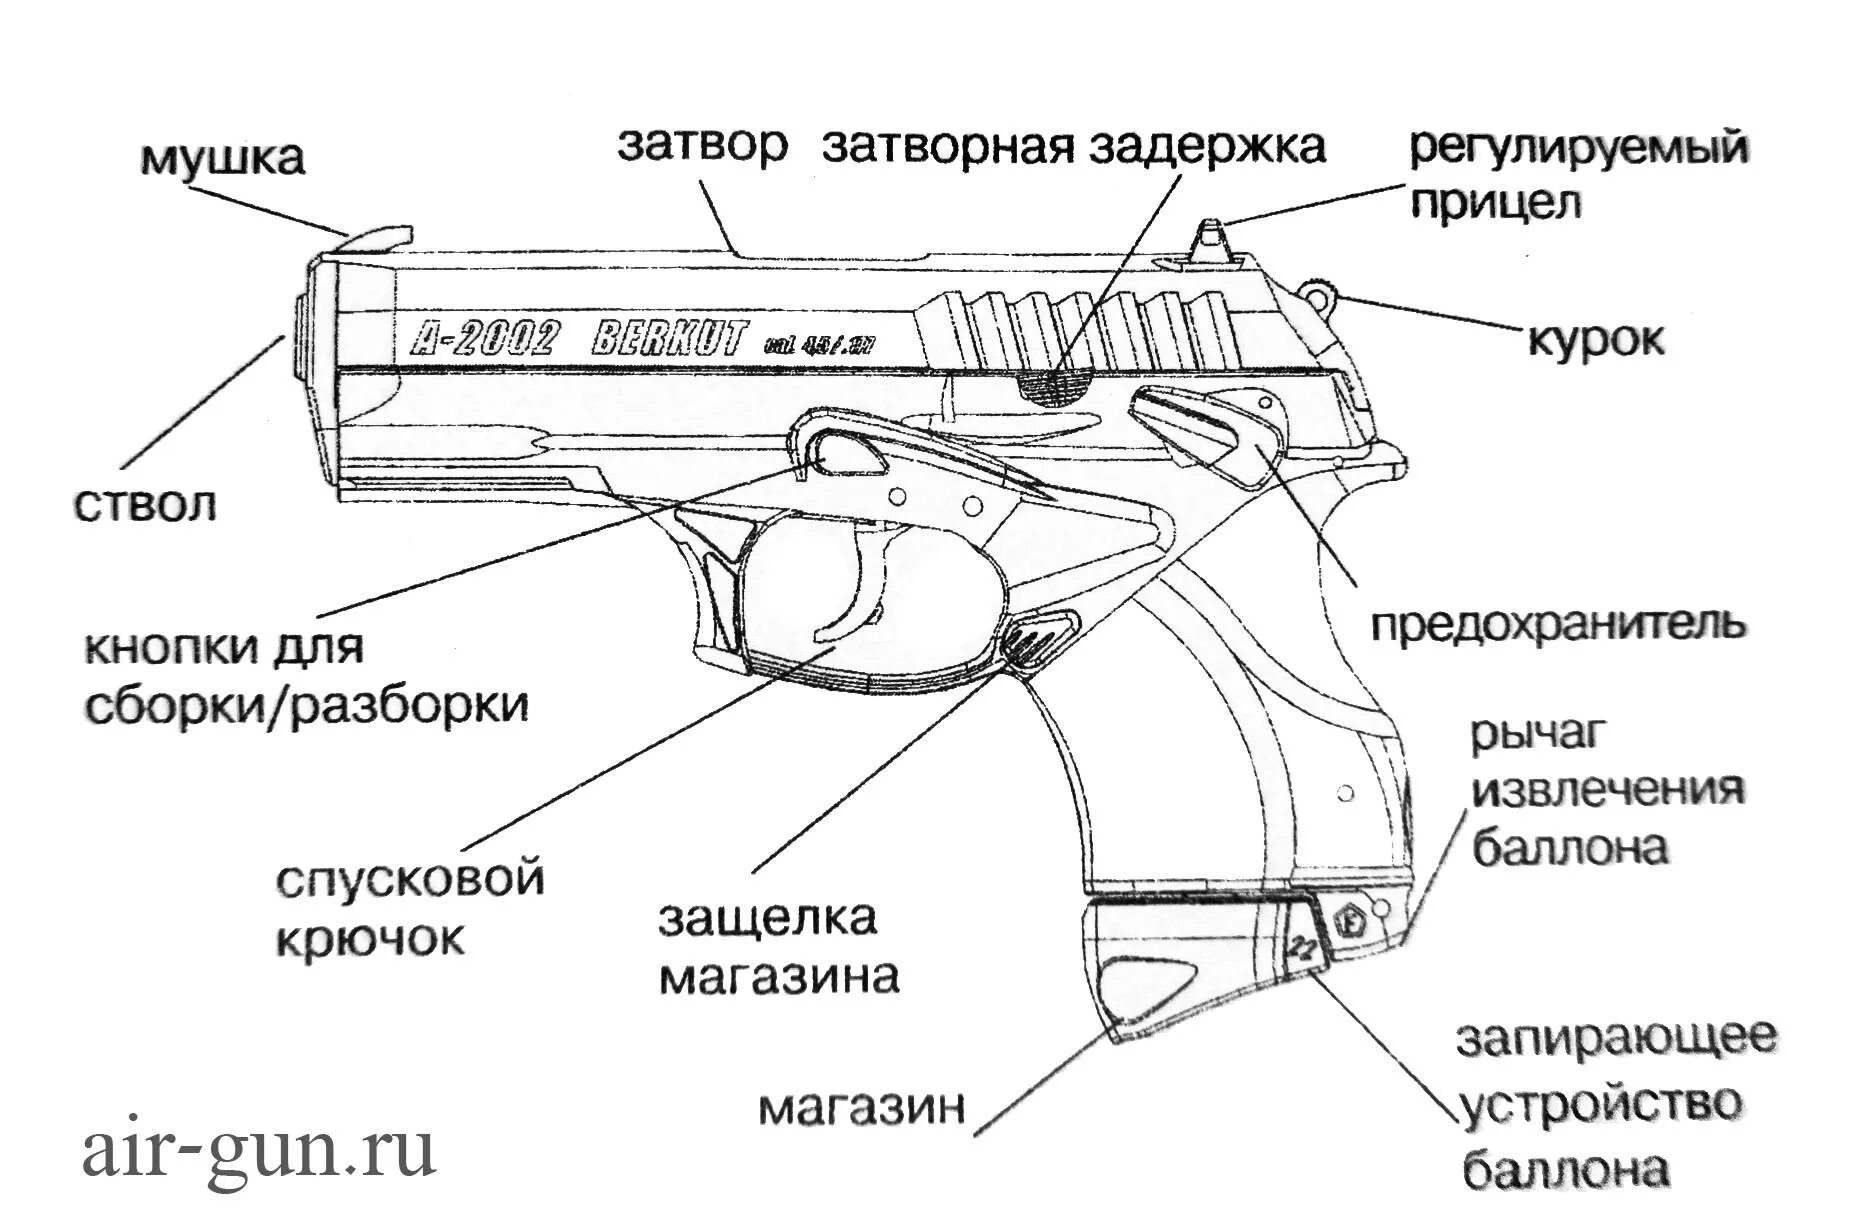 Основные составные части оружия. Строение пневматического пистолета ПМ. Разбор пневматического пистолета а 2002 Беркут.